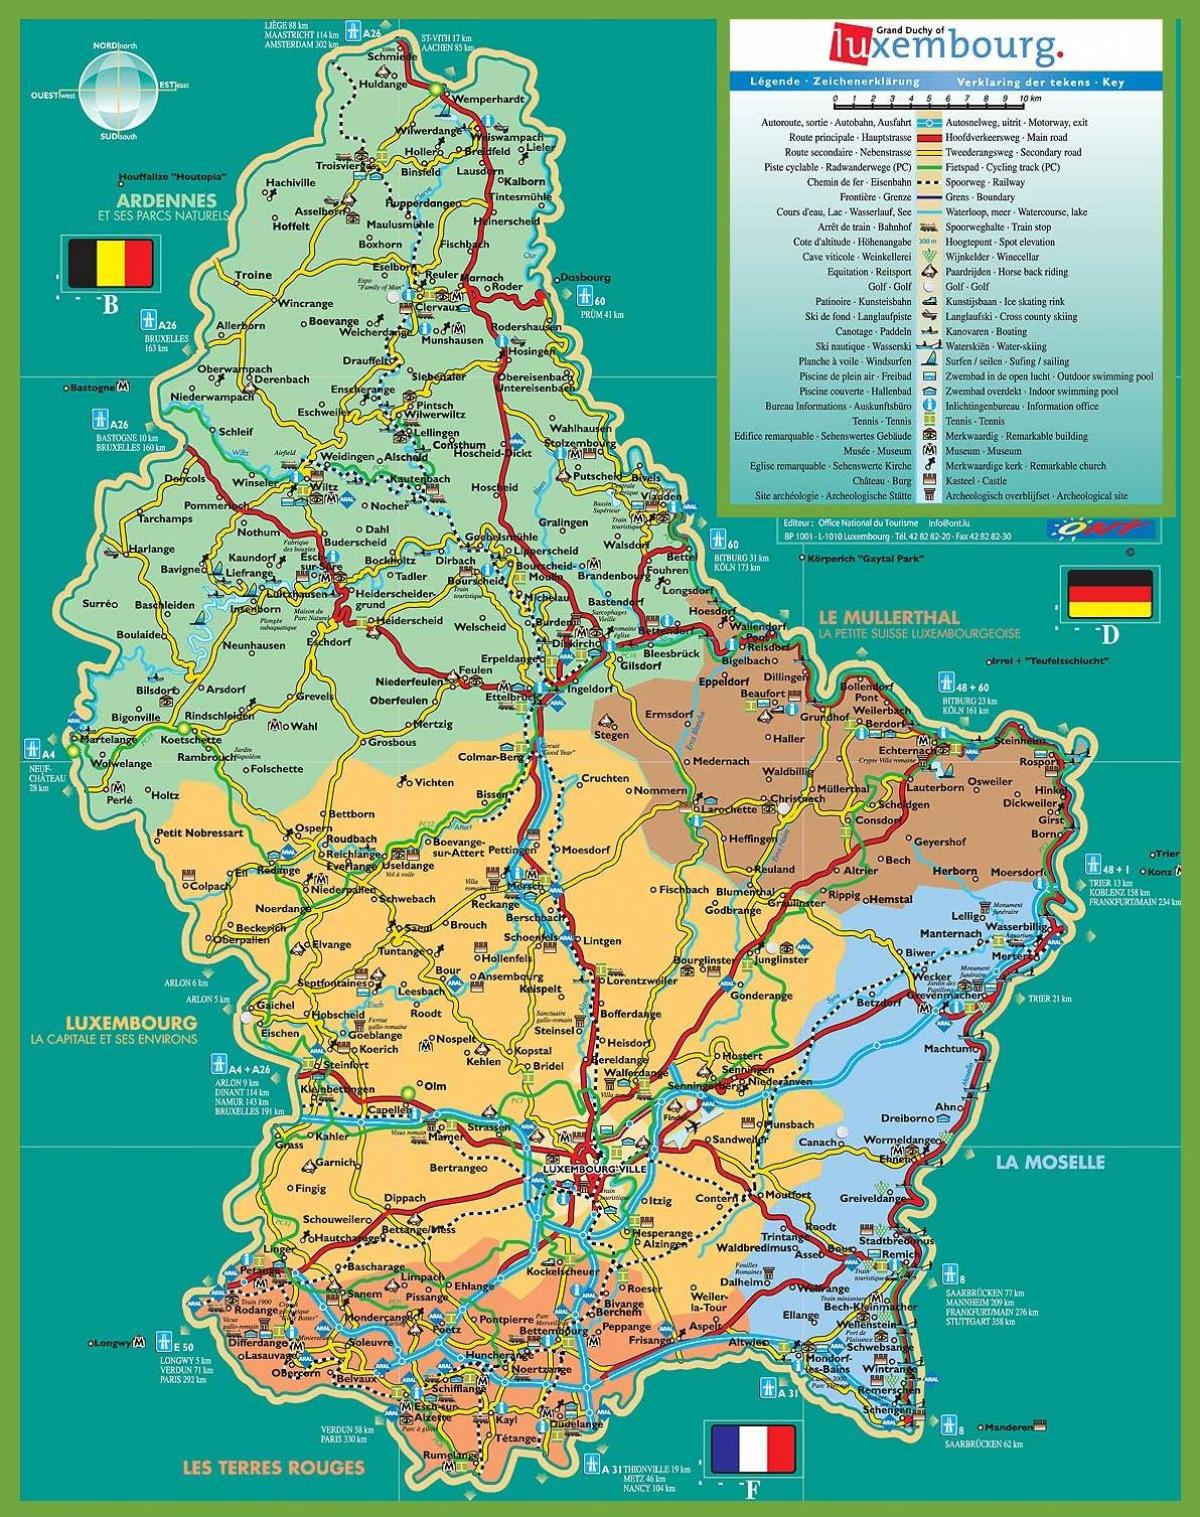 Liuksemburgas lankytinų vietų žemėlapis